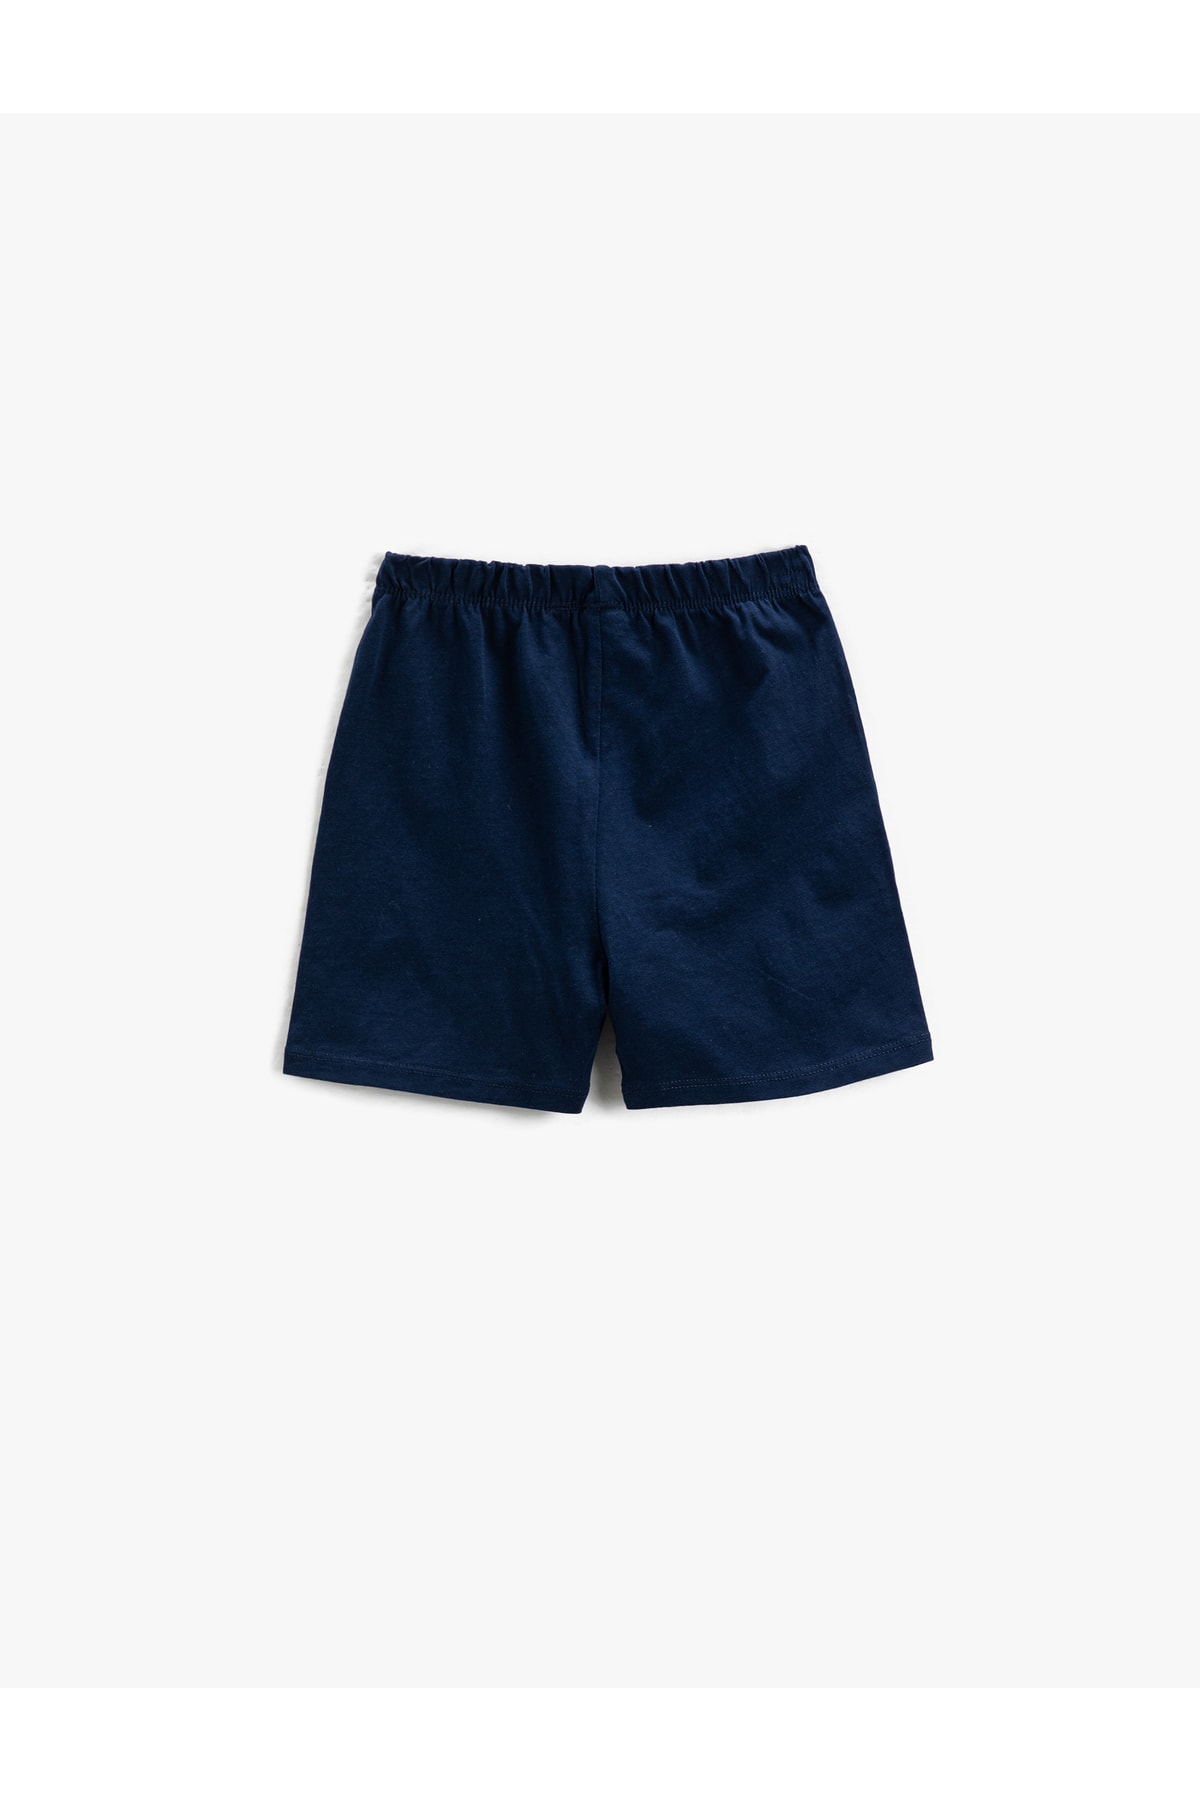 Koton Shorts with Printed Elastic Waist